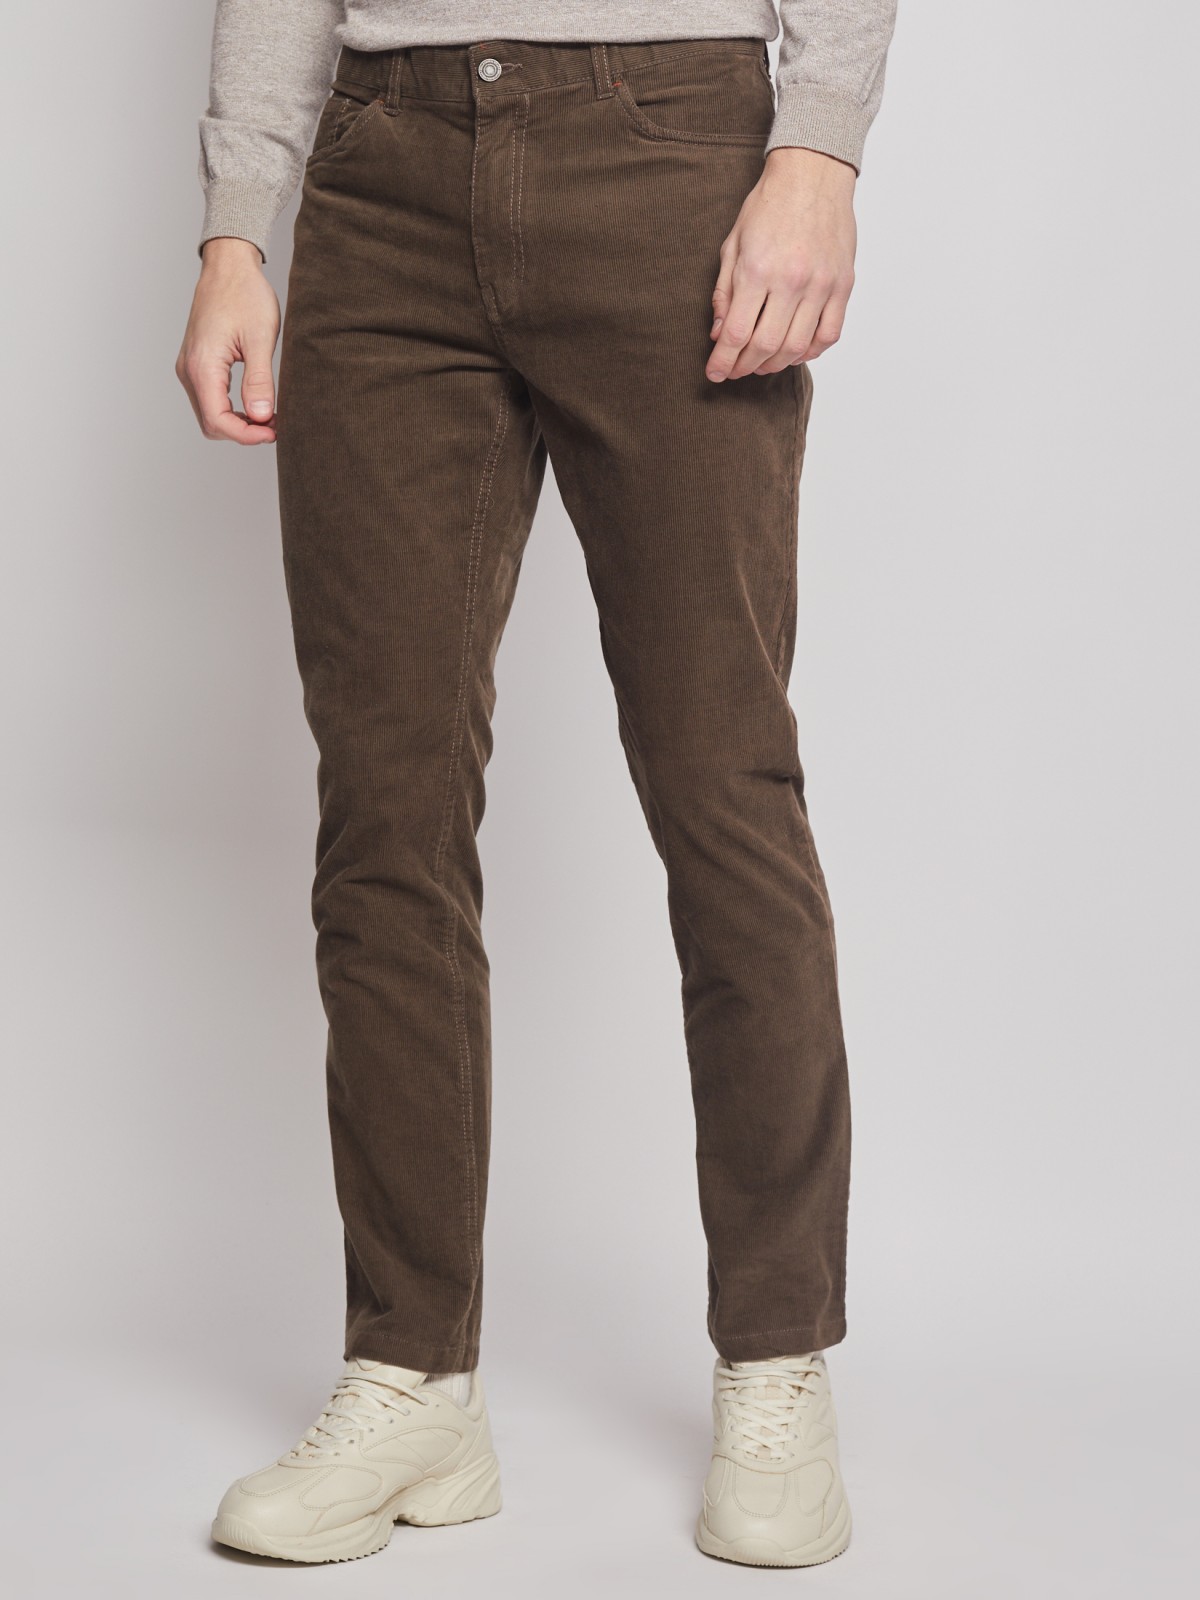 Вельветовые брюки силуэта Slim zolla 012347366013, цвет коричневый, размер 30 - фото 4